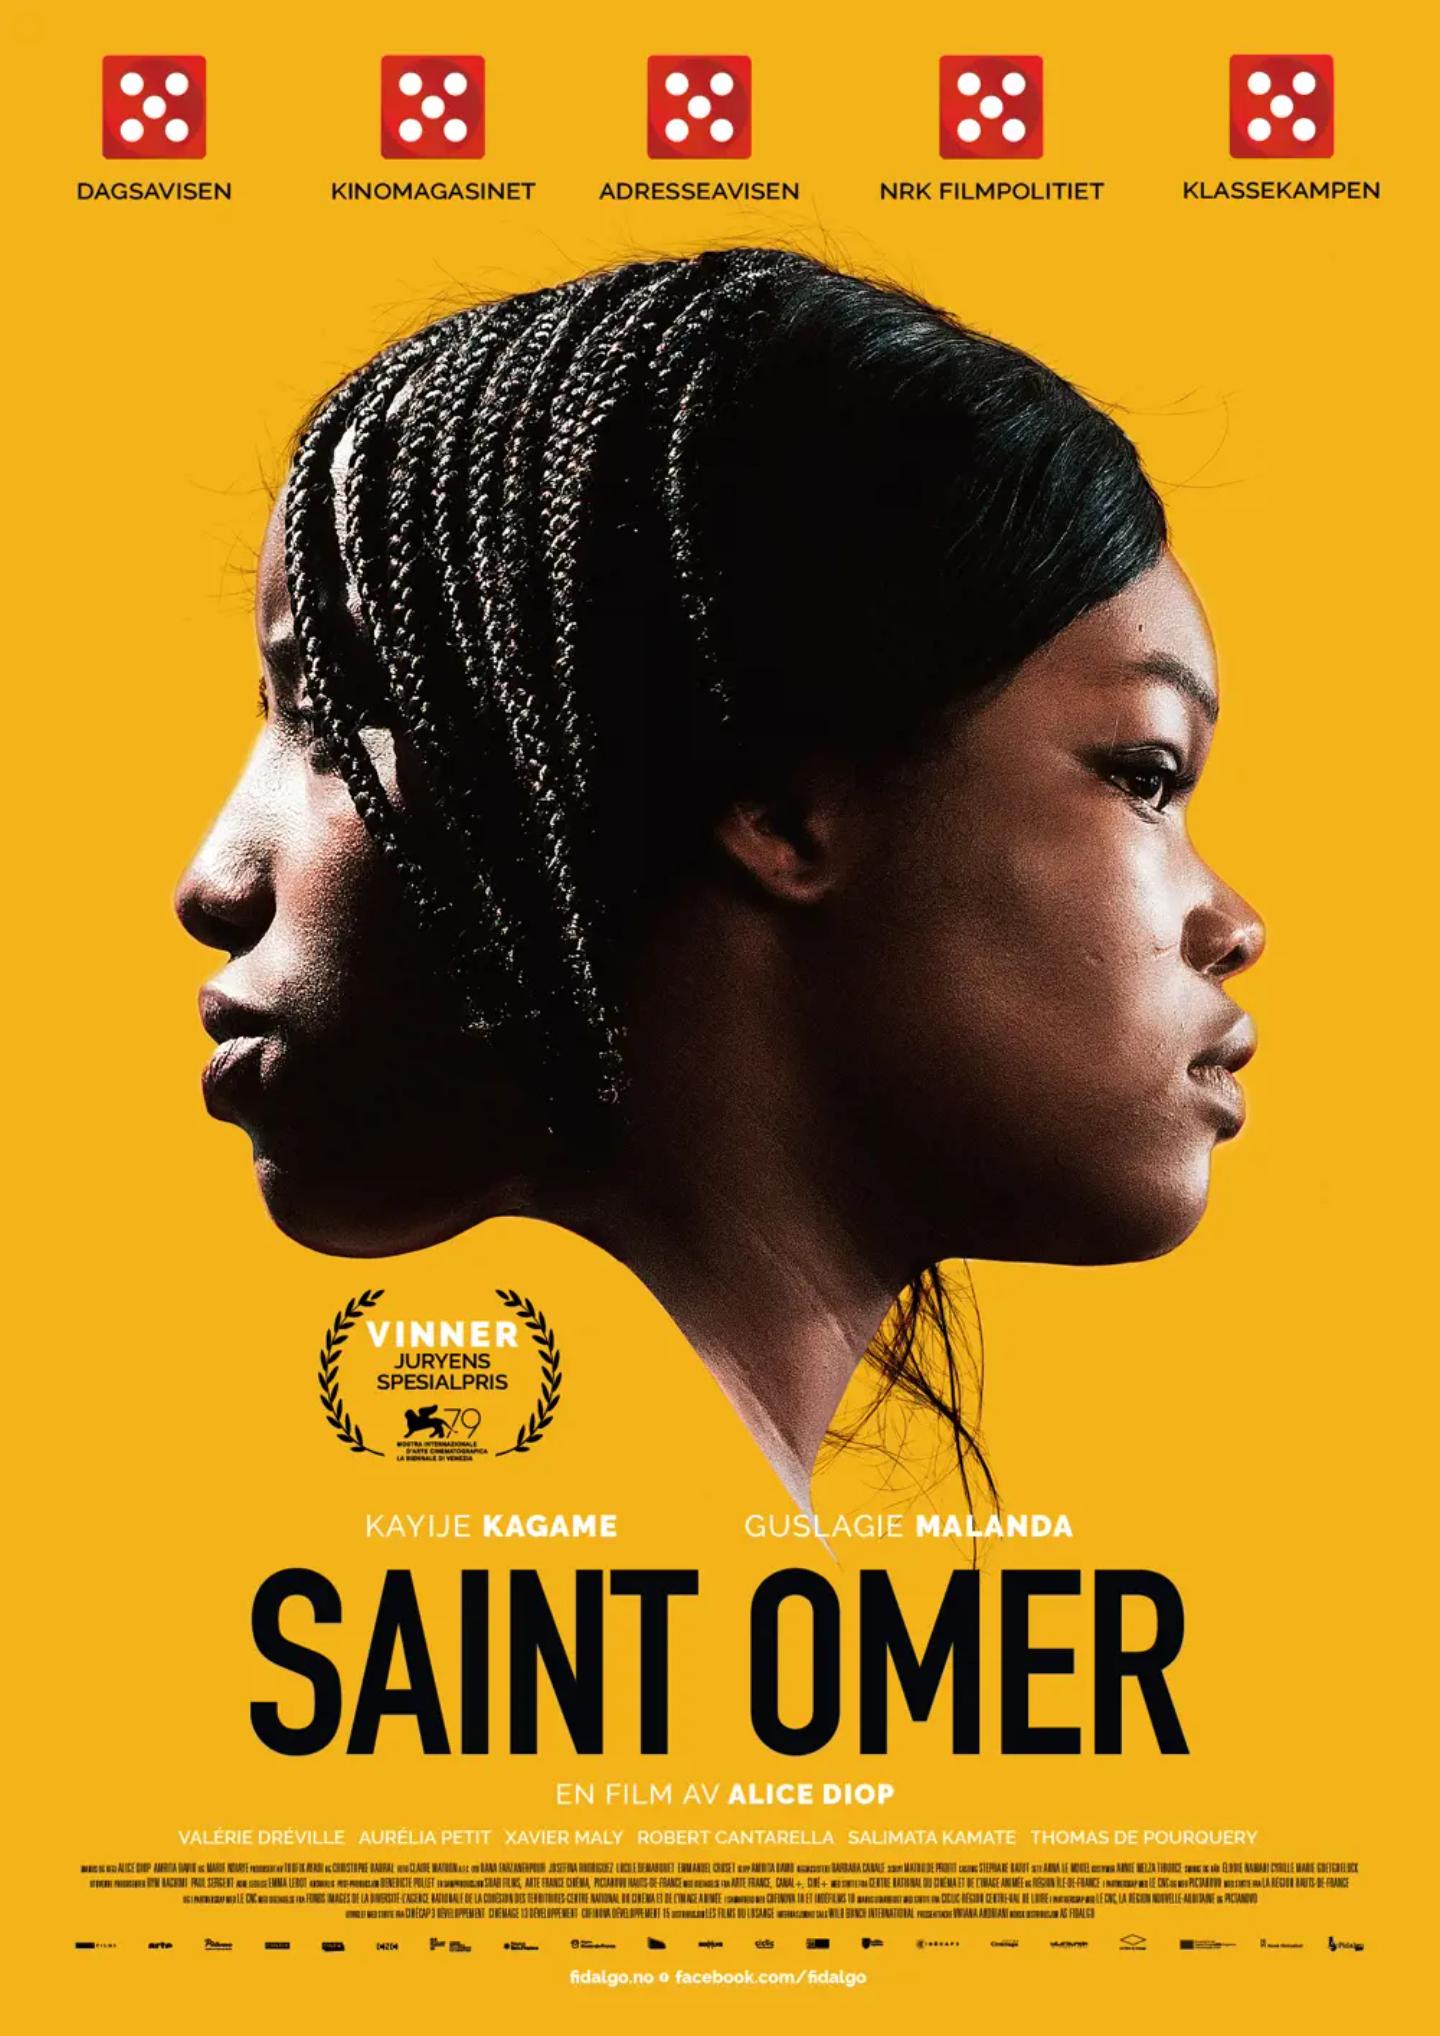 Plakat for 'Saint Omer'